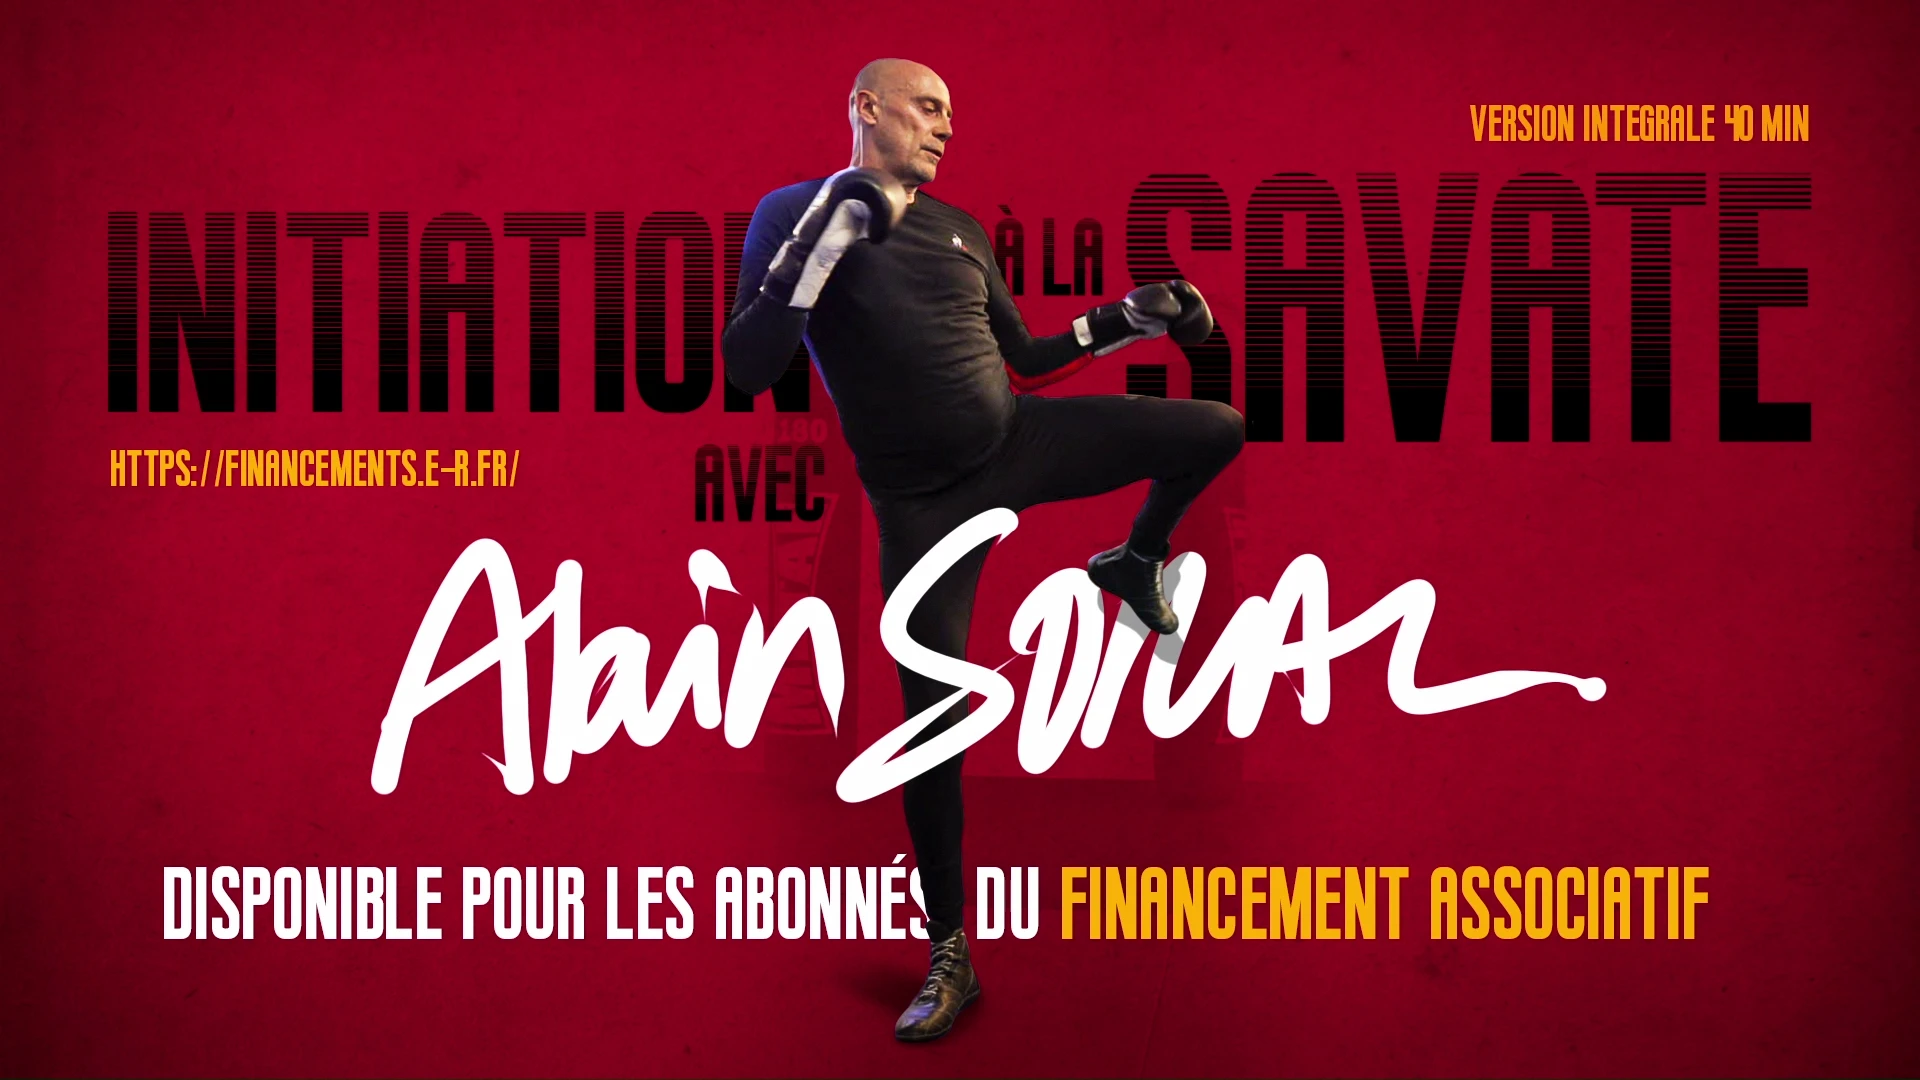 Initiation à la savate avec Alain Soral (extrait)